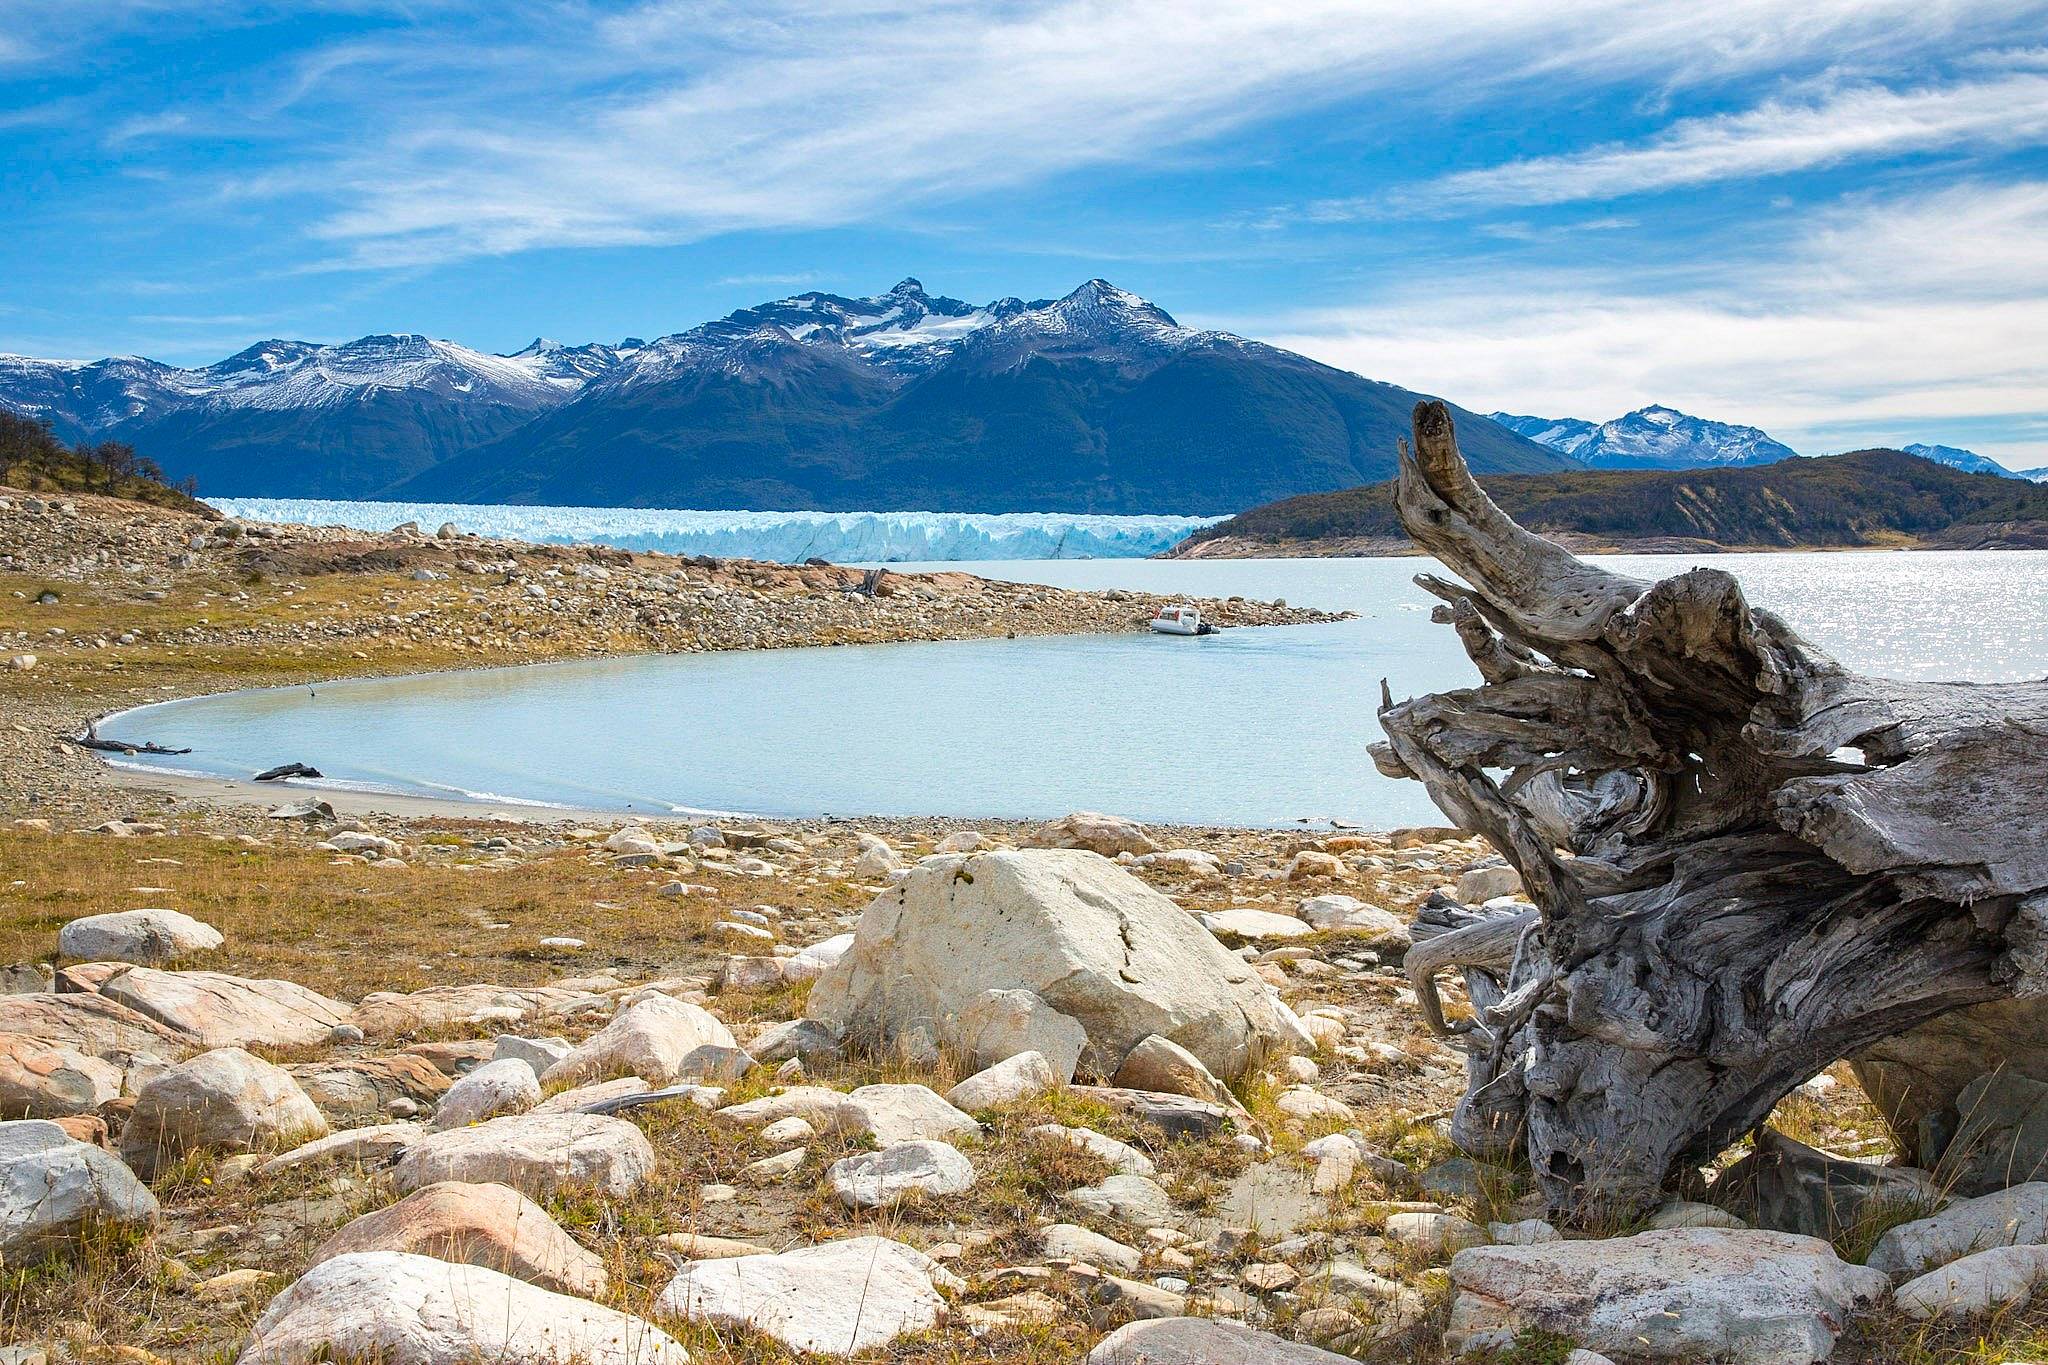 Découverte de la campagne patagonne et visite du Perito Moreno